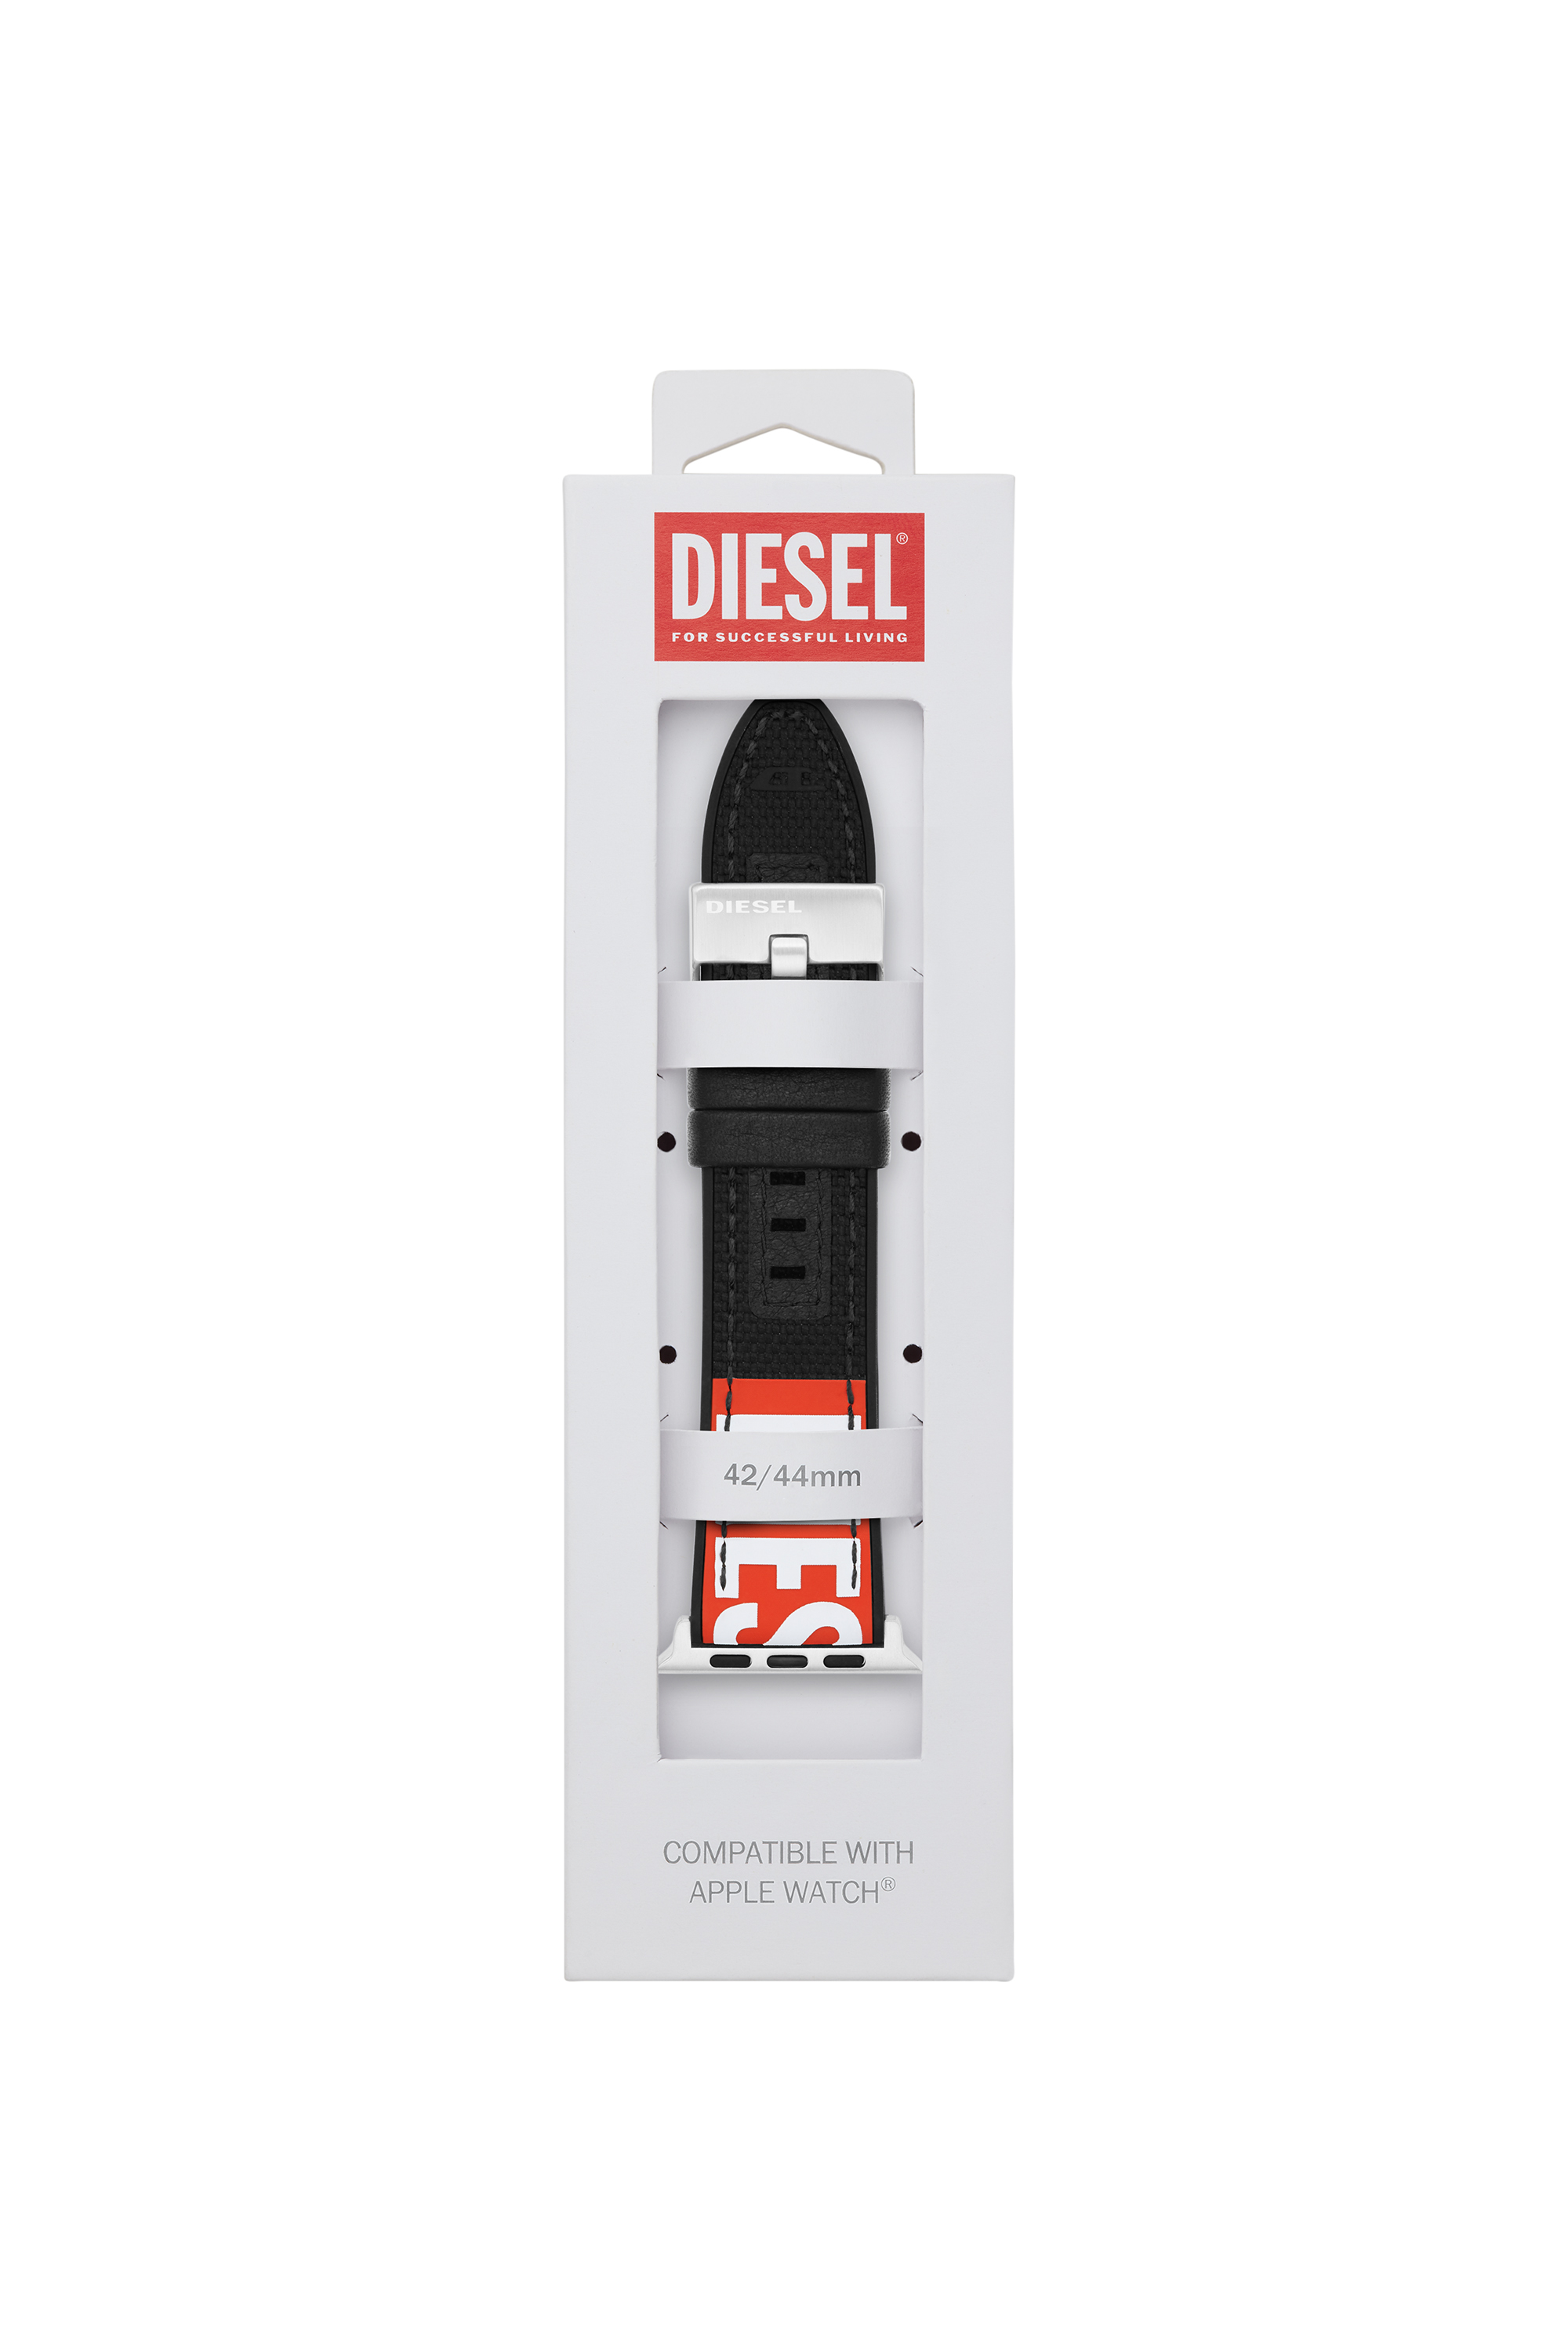 Diesel - DSS005, Nero - Image 2